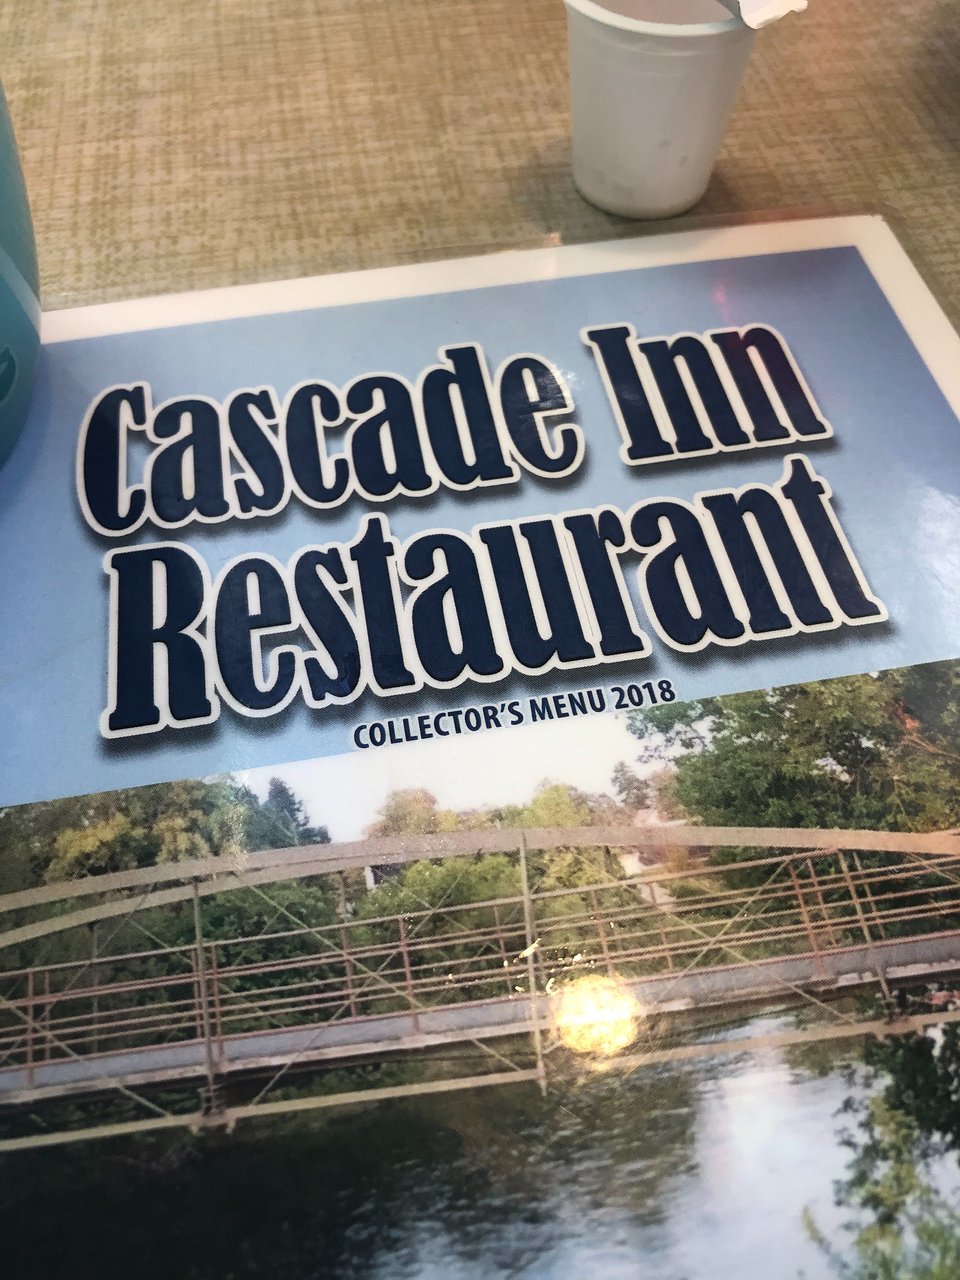 The Cascade Inn